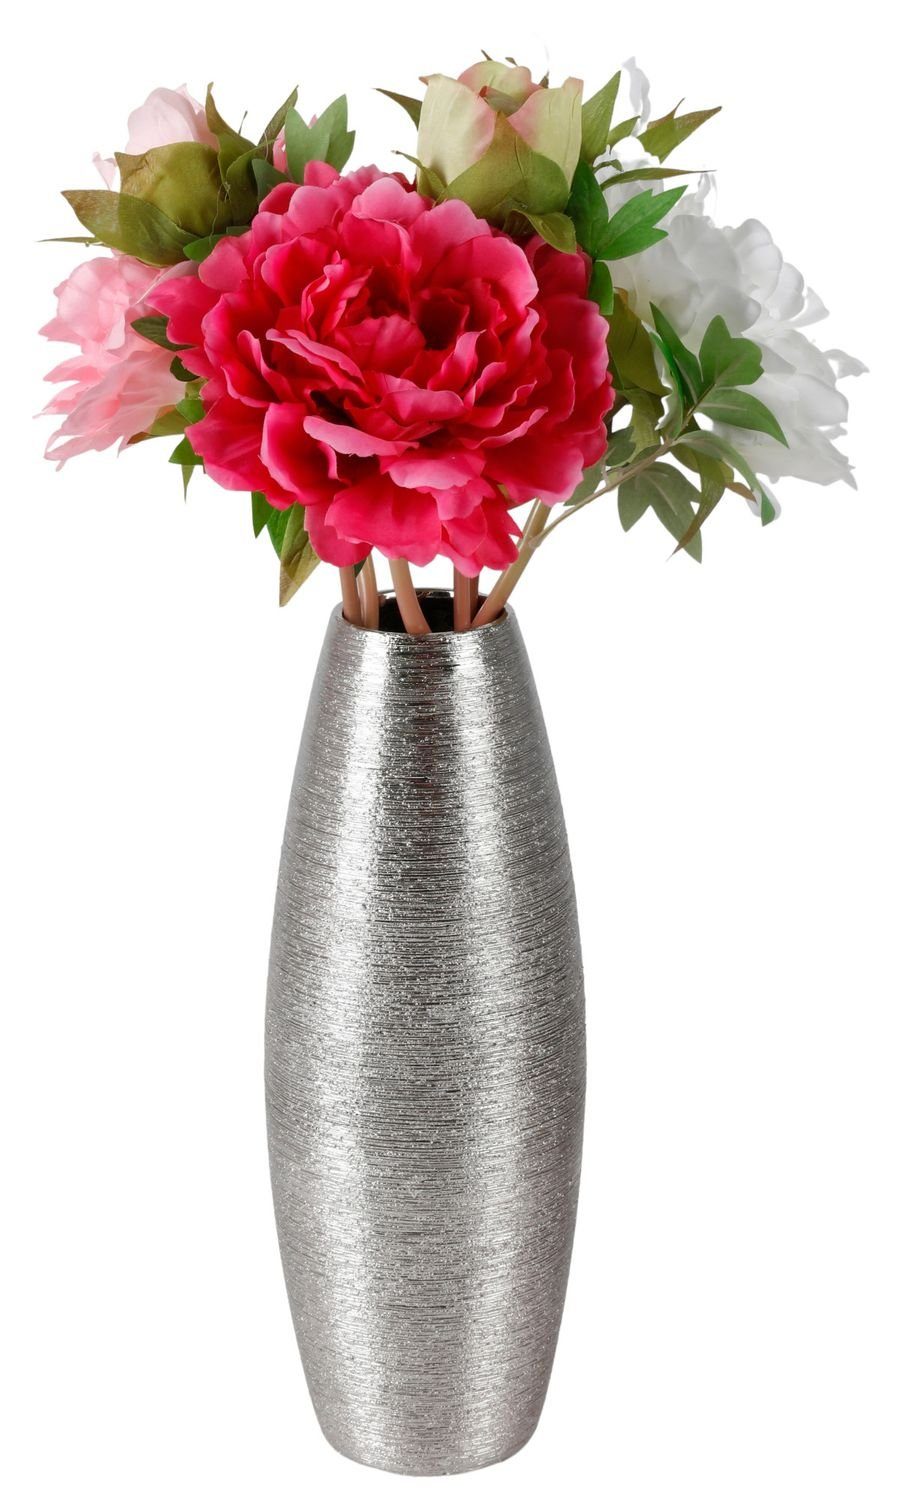 BURI Tischvase Keramik Vase silber glänzend 32x12cm Blumenvase Dekovase Tischvase Ker